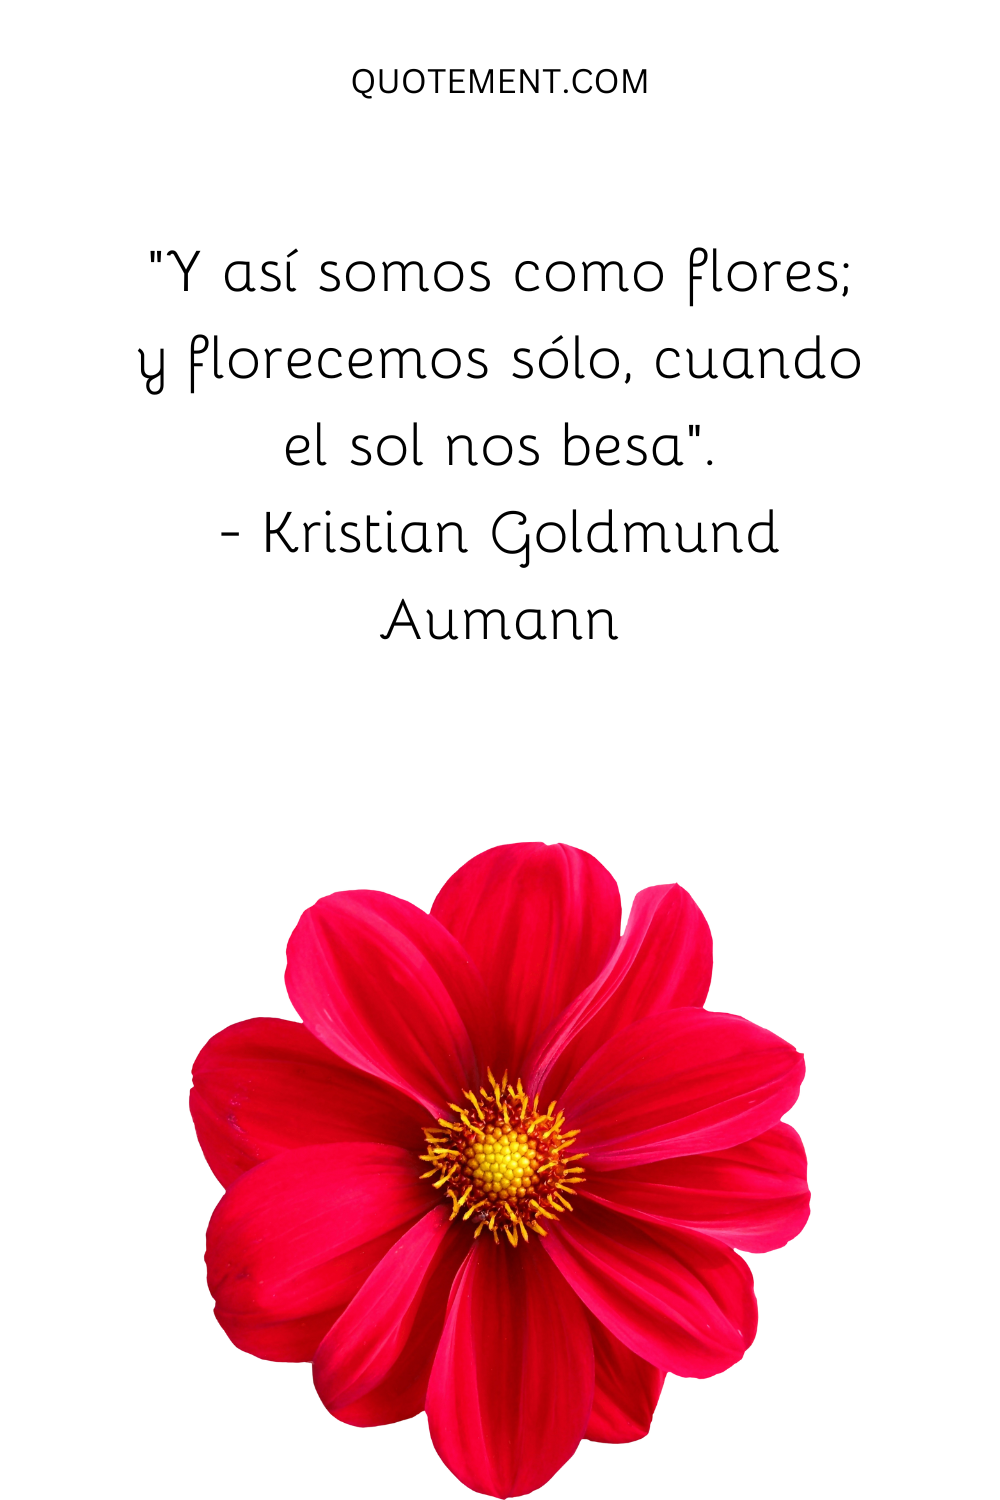 "Y así somos como flores; y florecemos sólo, cuando el sol nos besa". - Kristian Goldmund Aumann